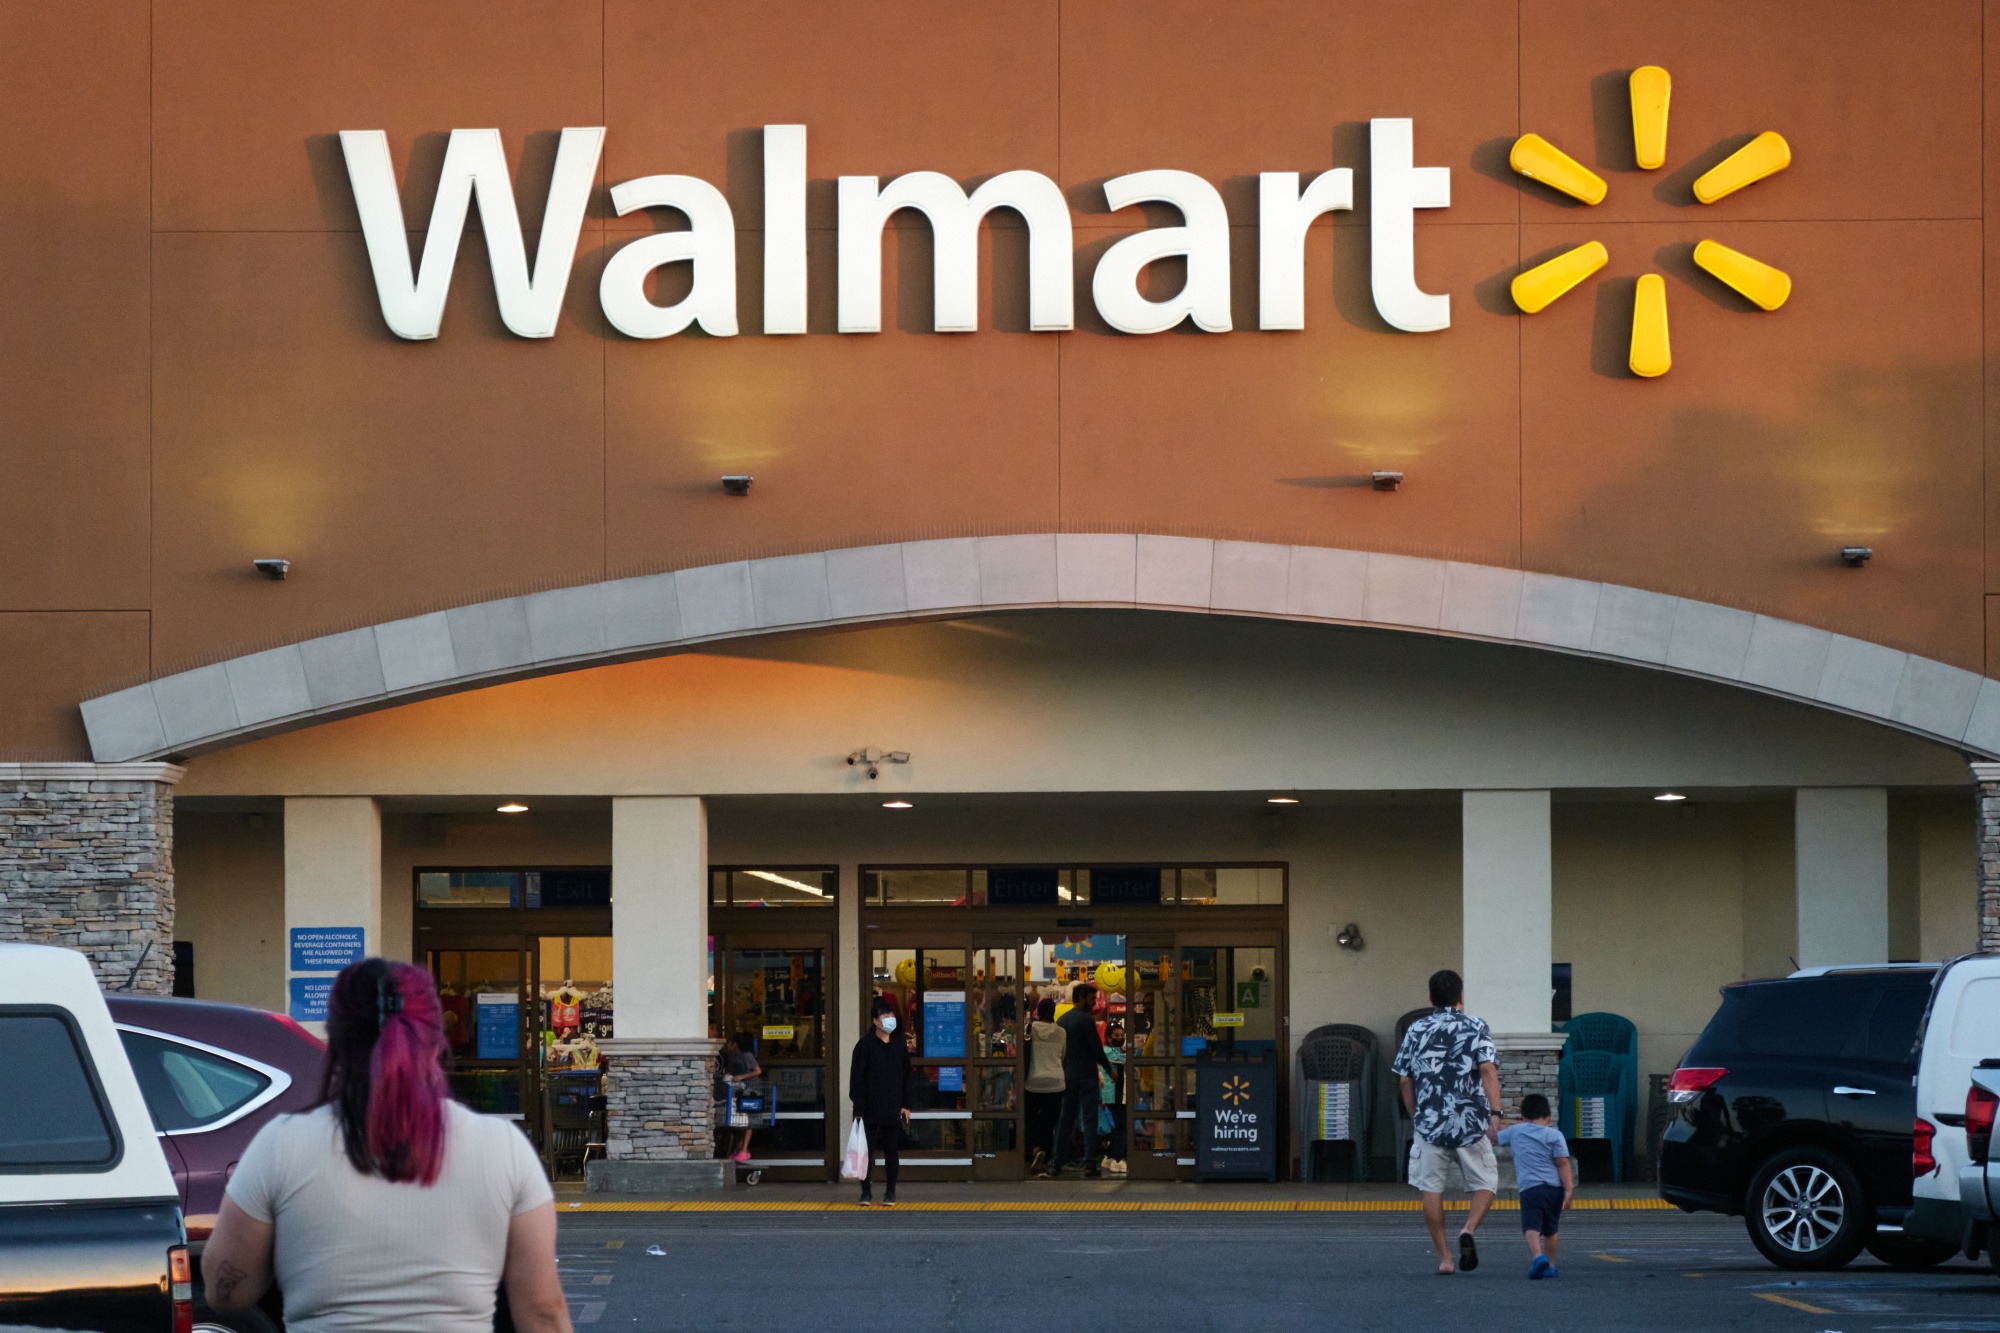 Walmart's Supplier Mandate: Replenish Shelves Faster, And We'll Turn Over  Customer Data